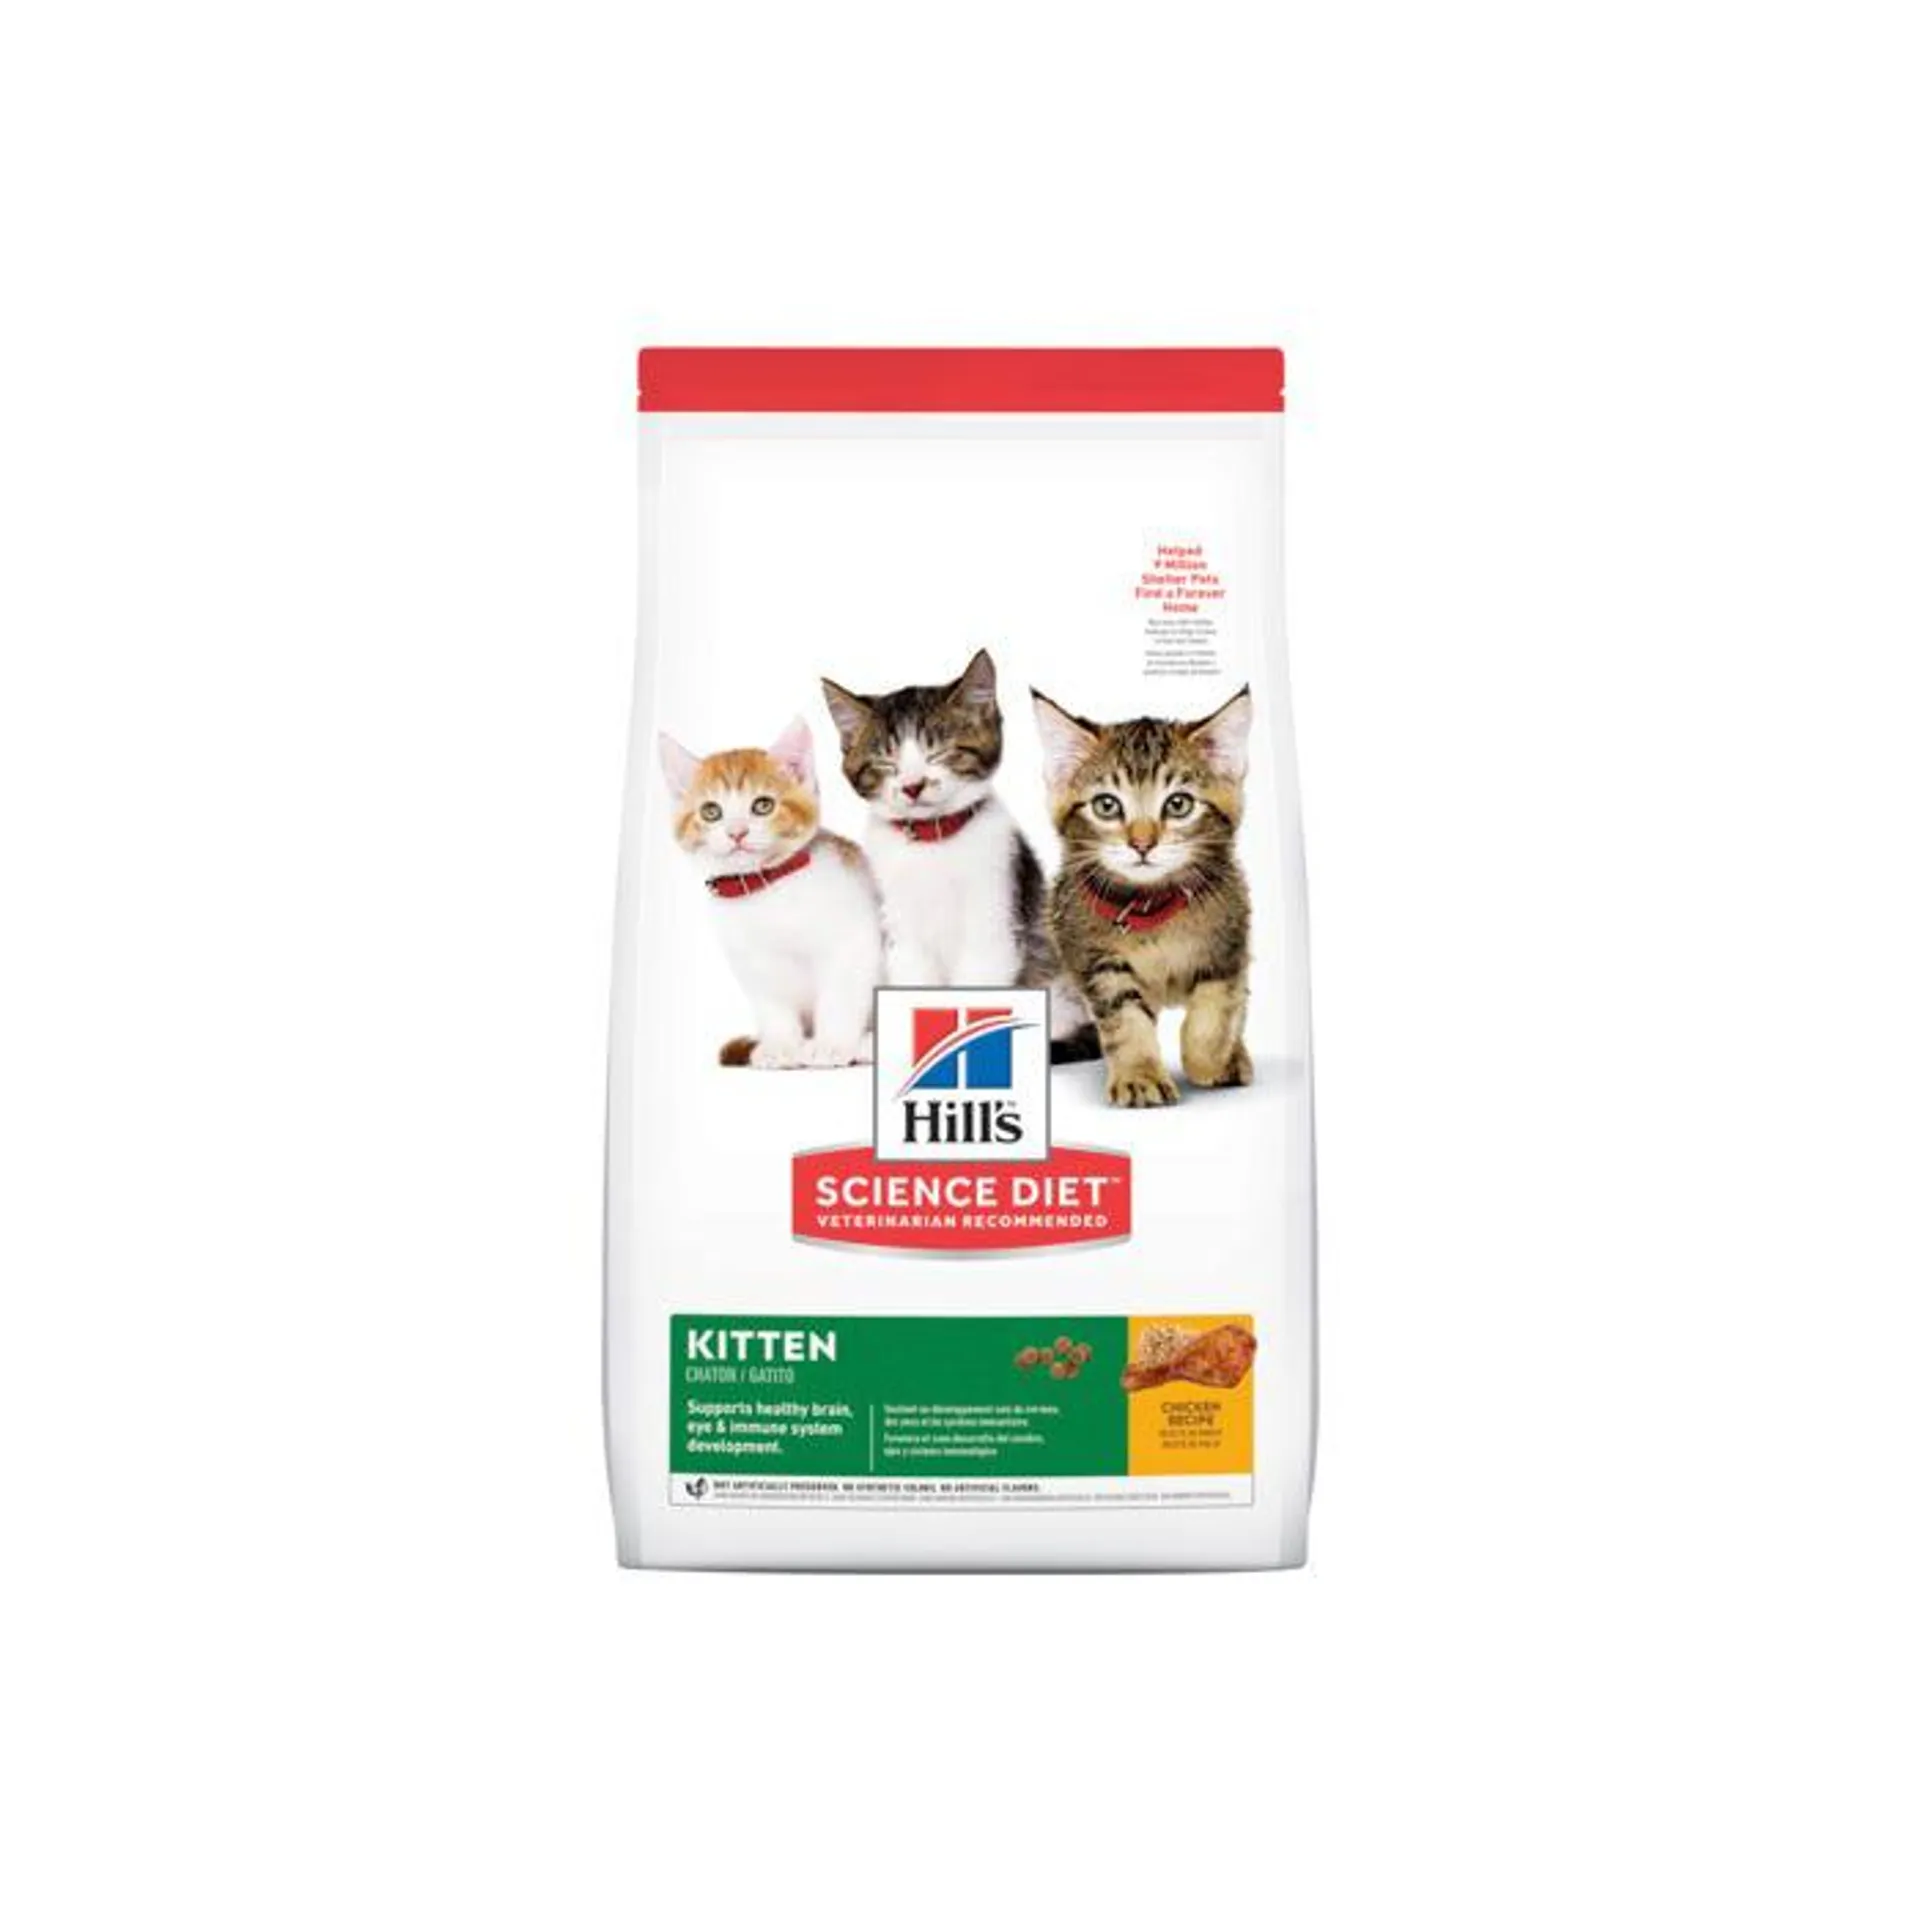 Hill's Science Diet Kitten Food 1.58kg